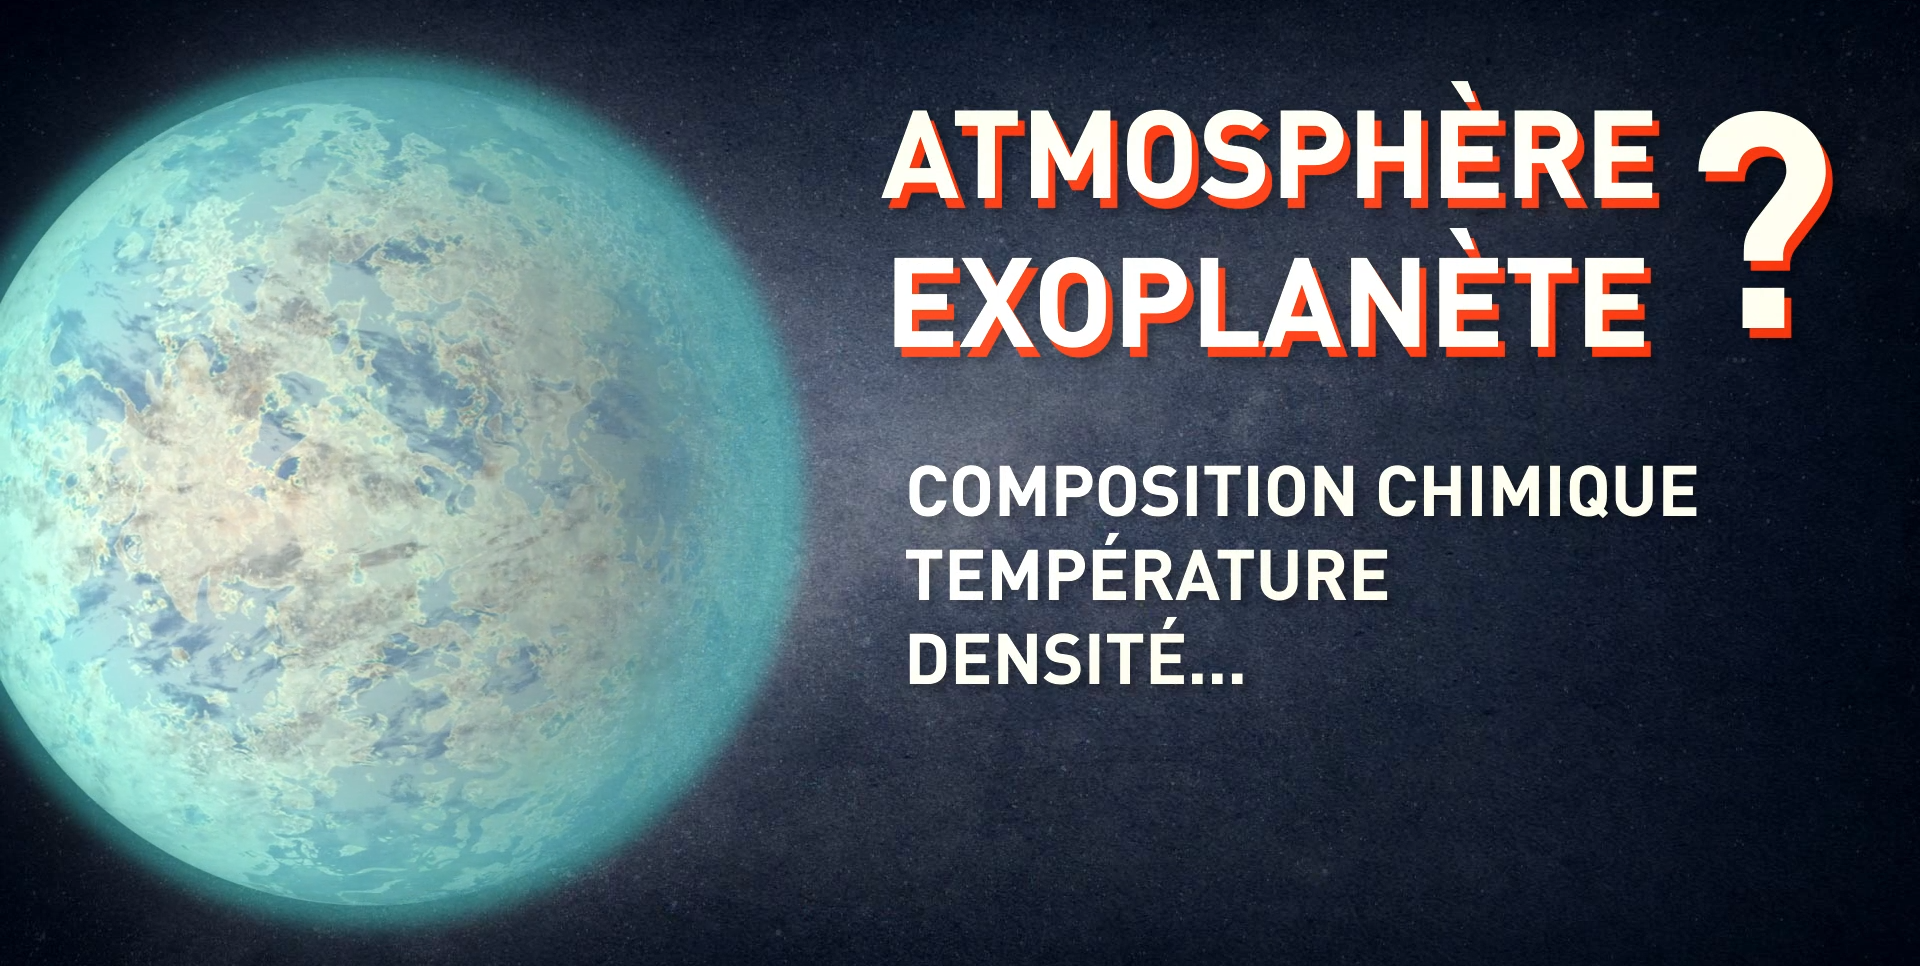 Observation des atmosphères exoplanétaires